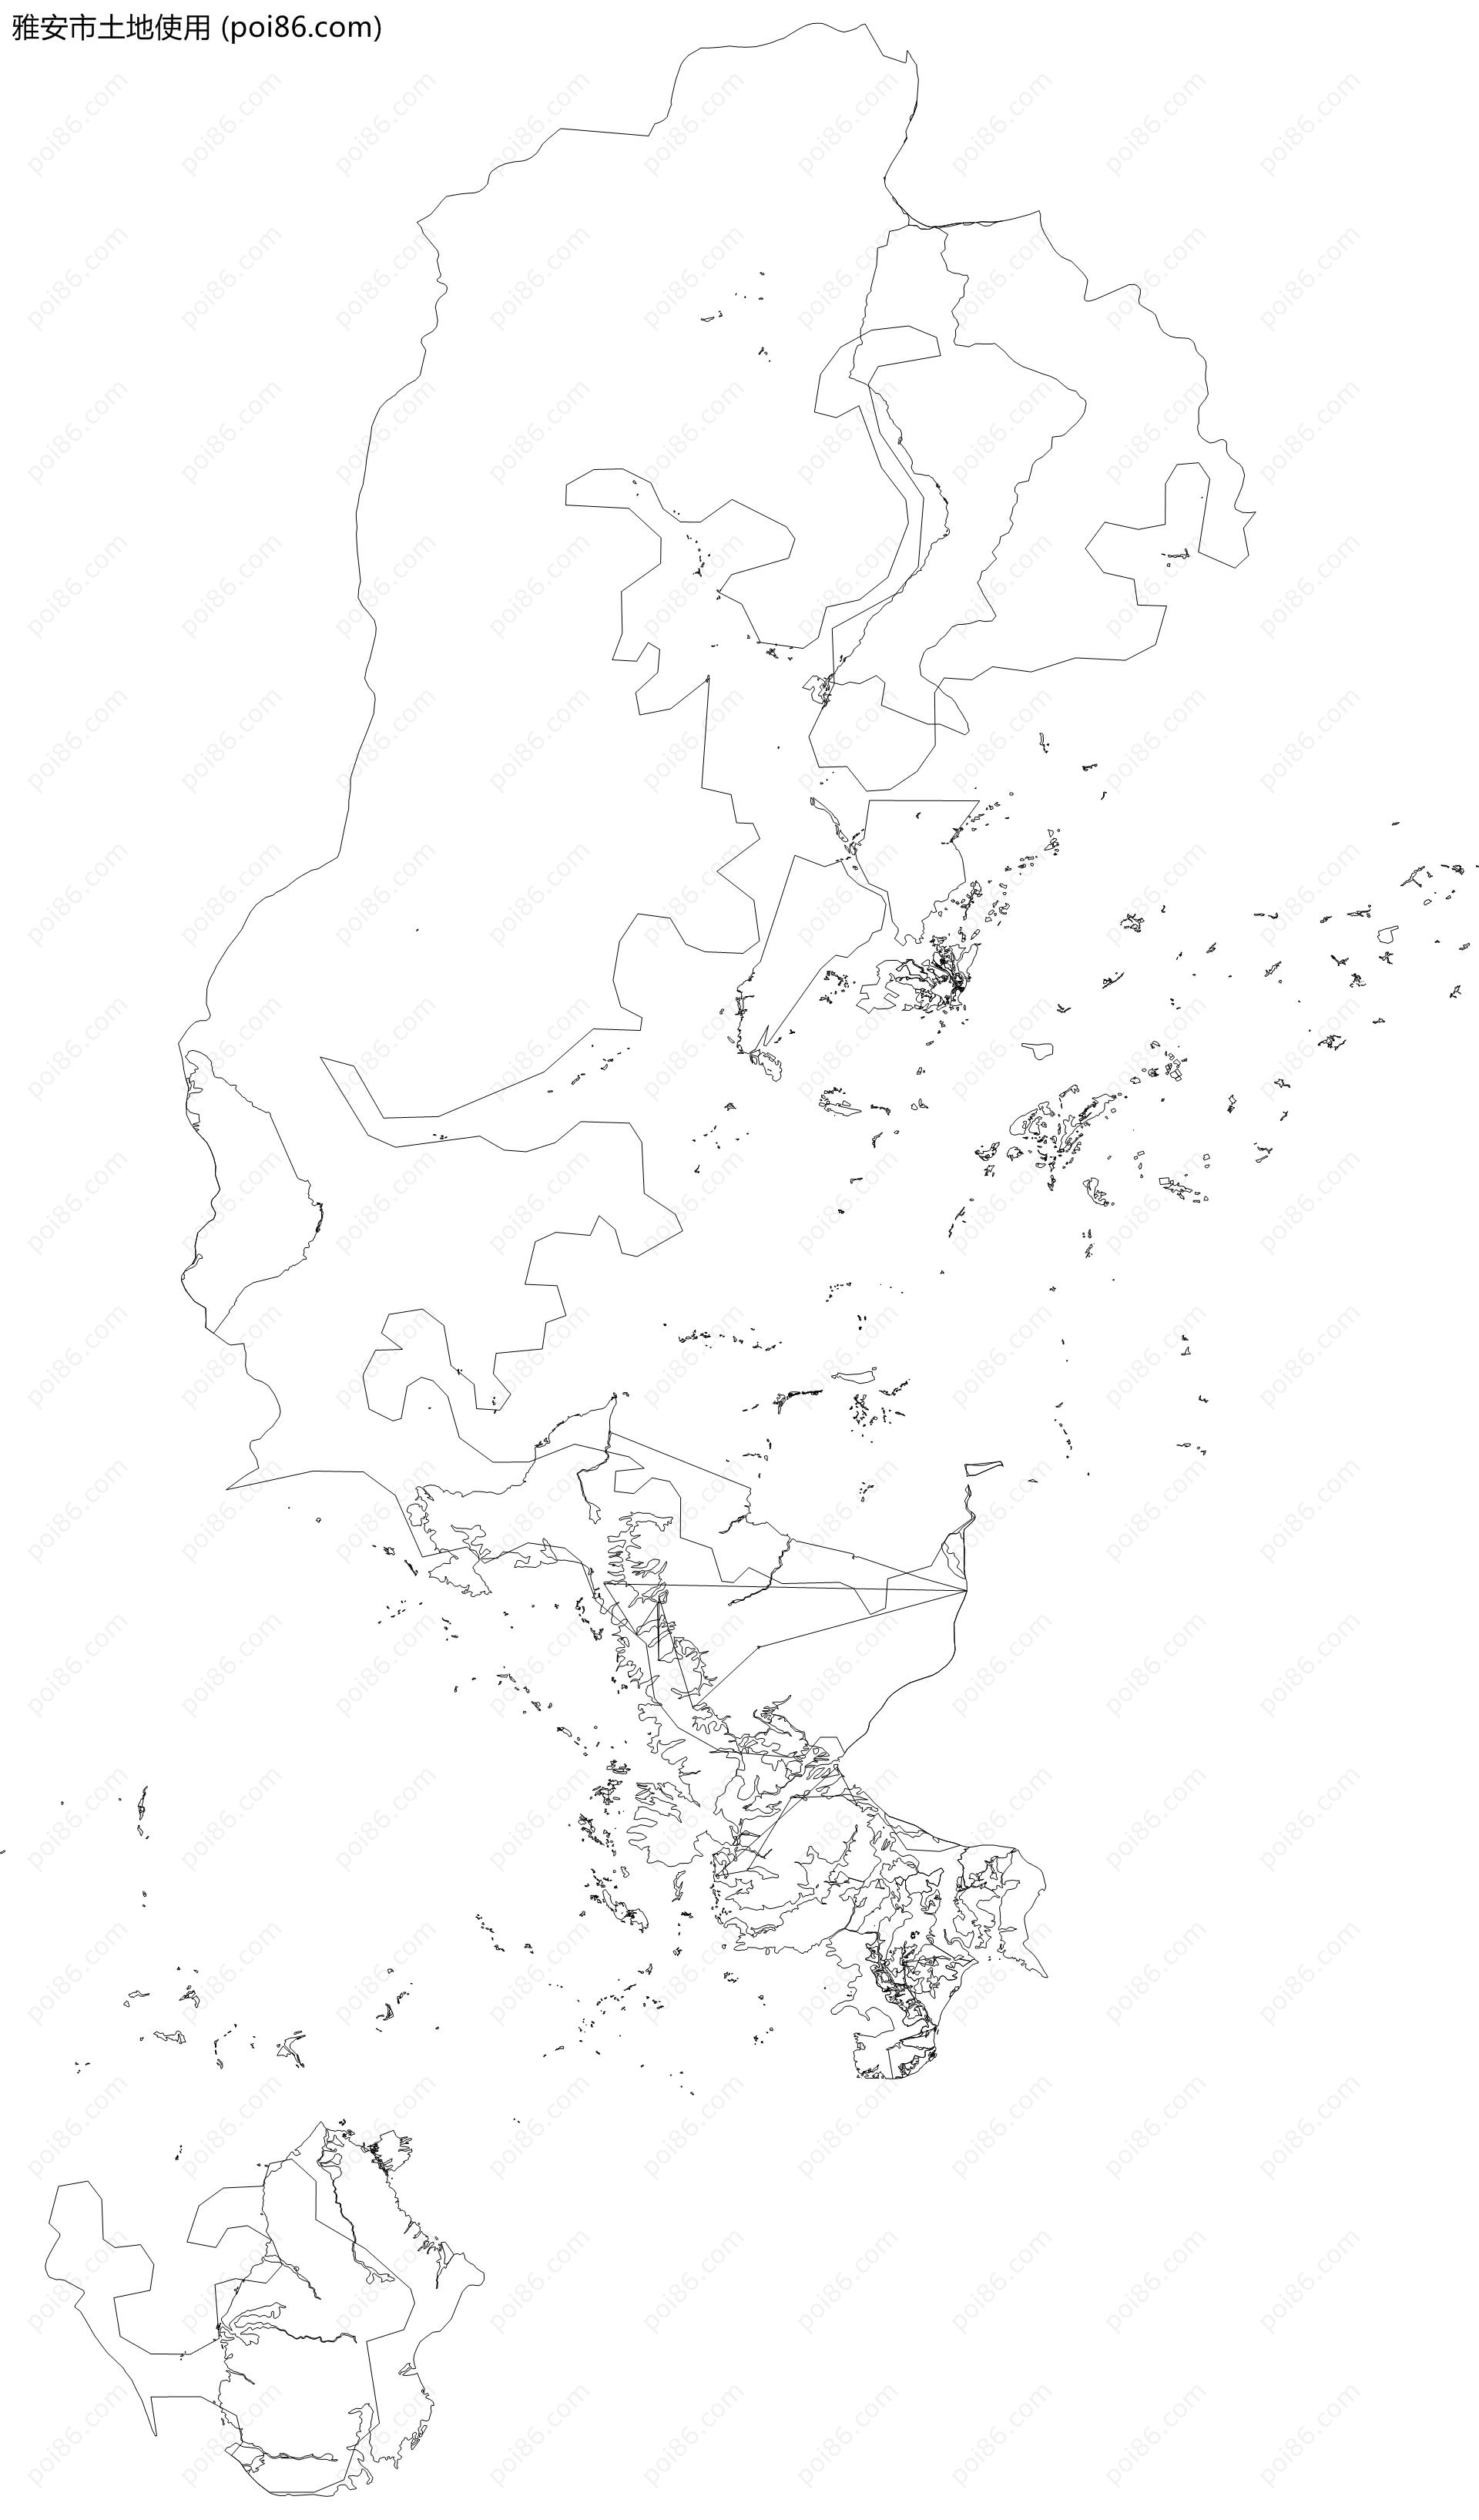 雅安市土地使用地图